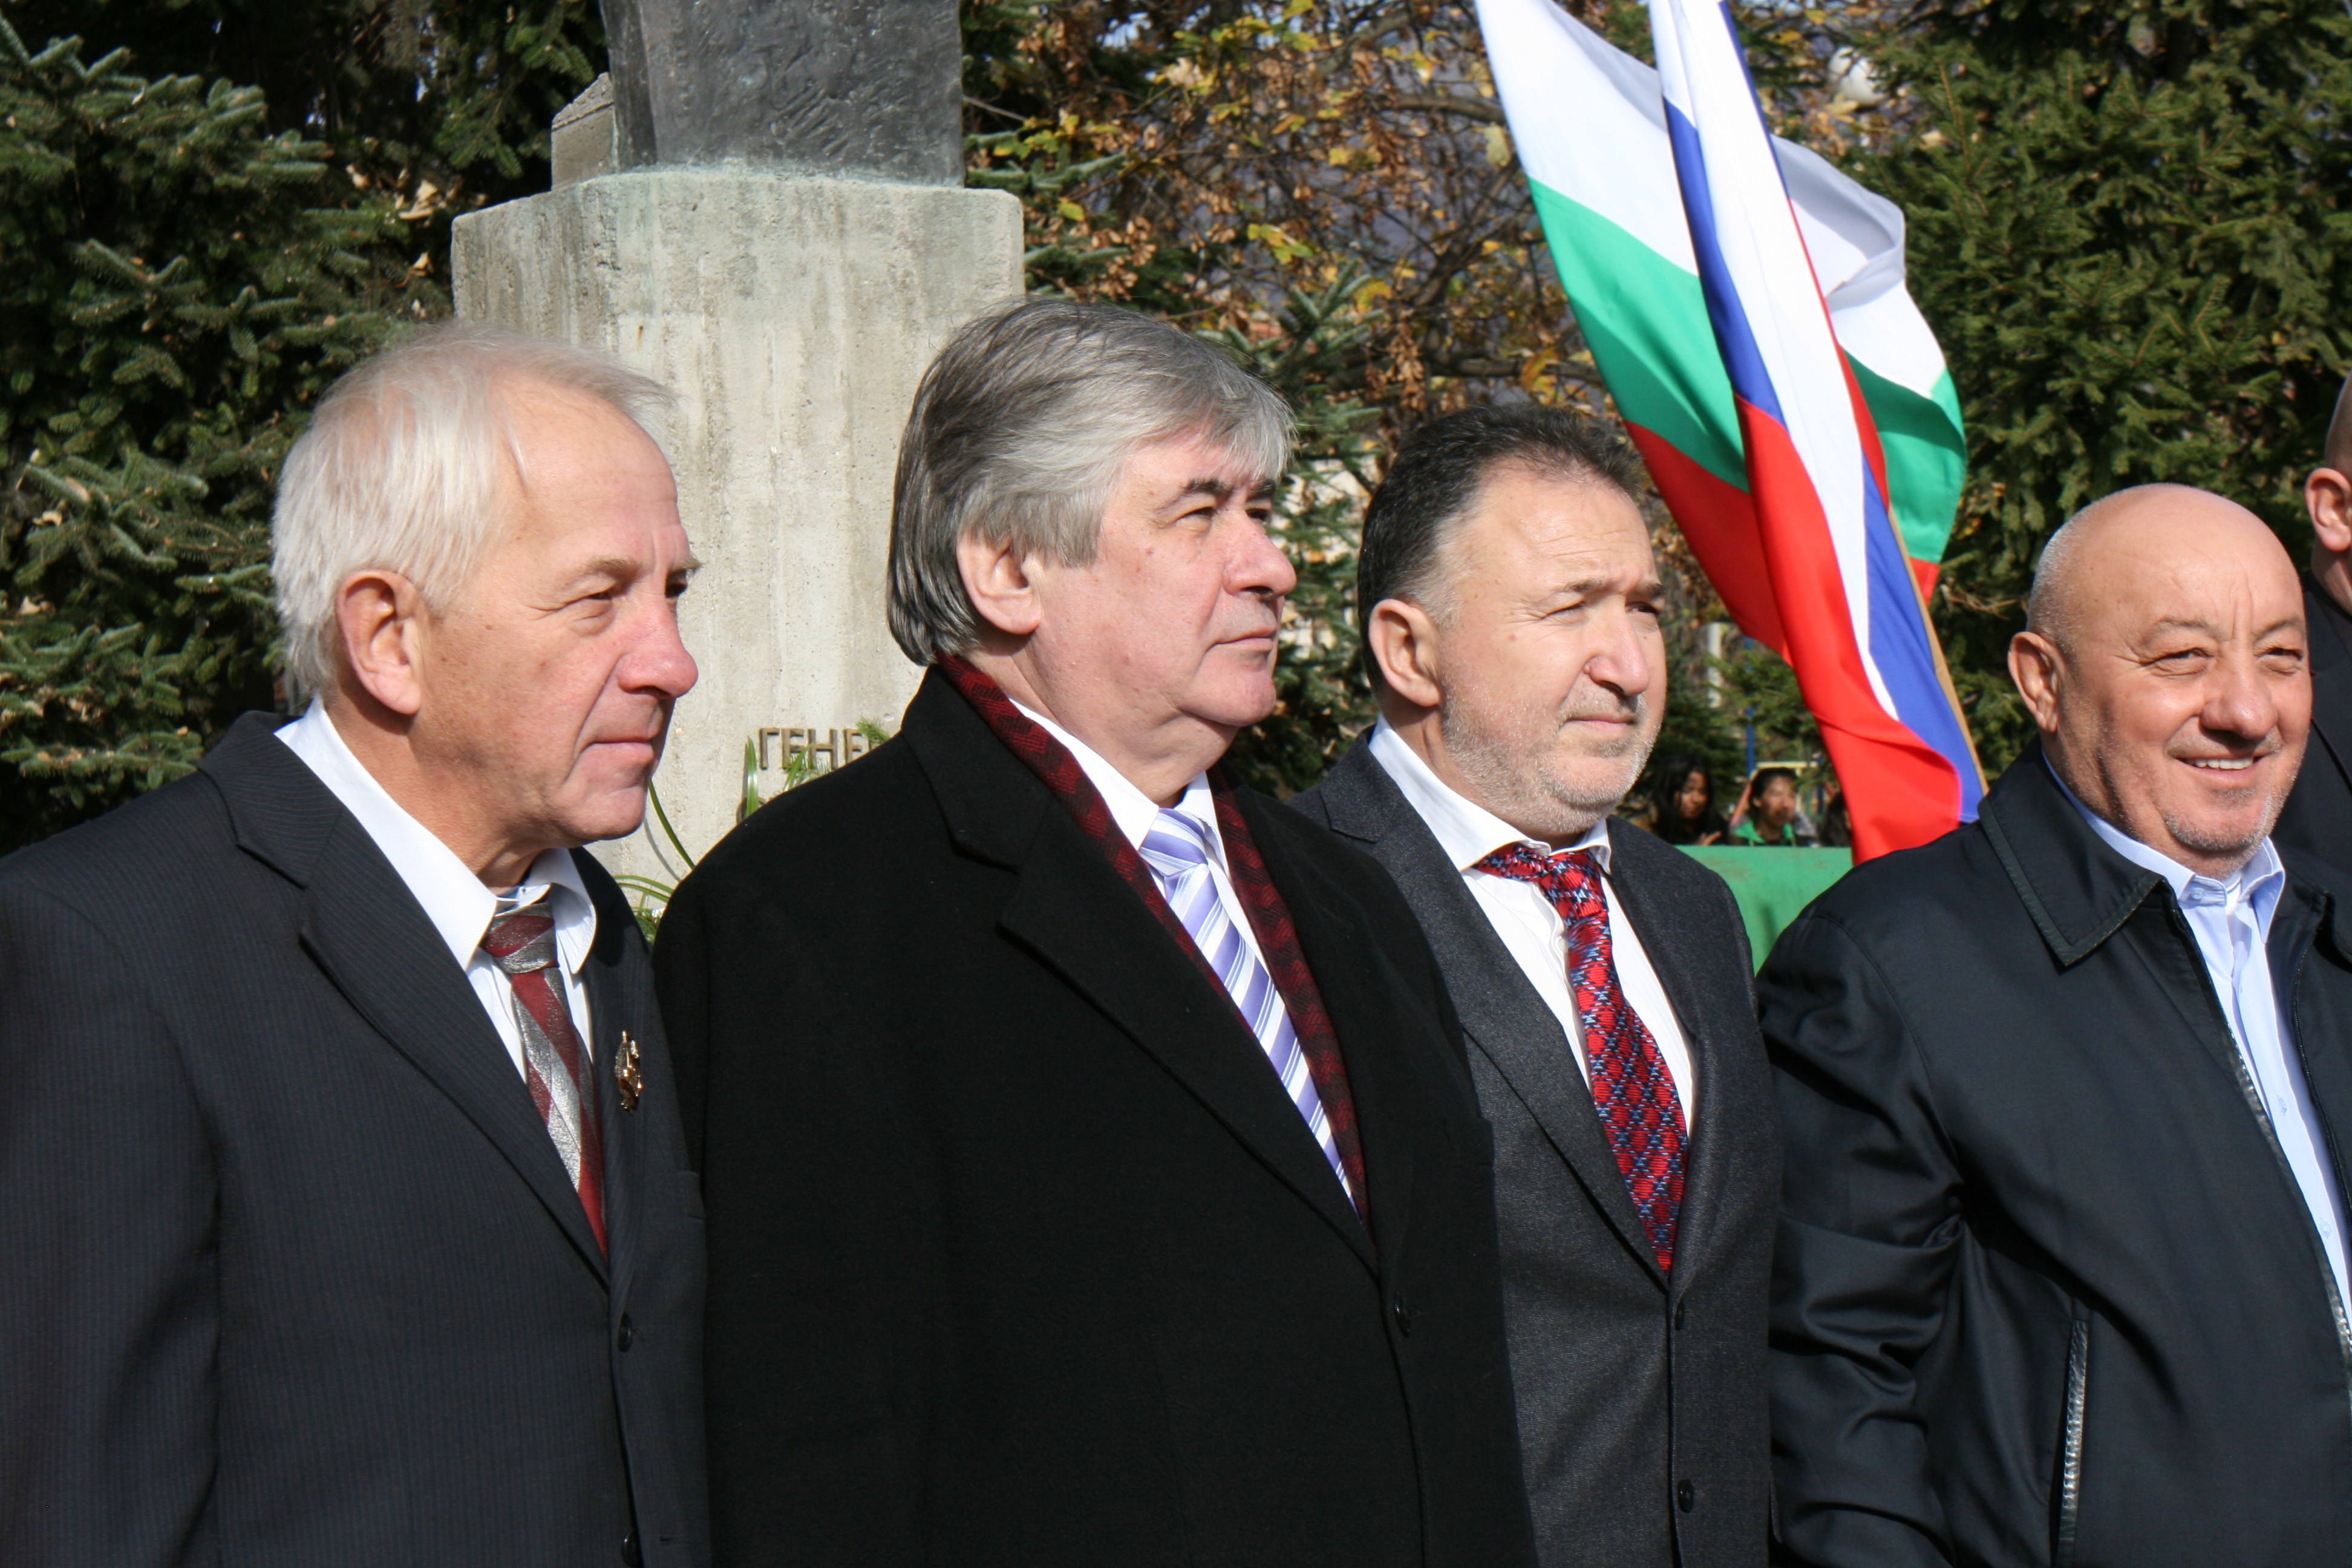 Н. Пр. Анатолий Макаров (втори от ляво надясно) пред паметника на генерал Николай Столетов в с. Столетово.